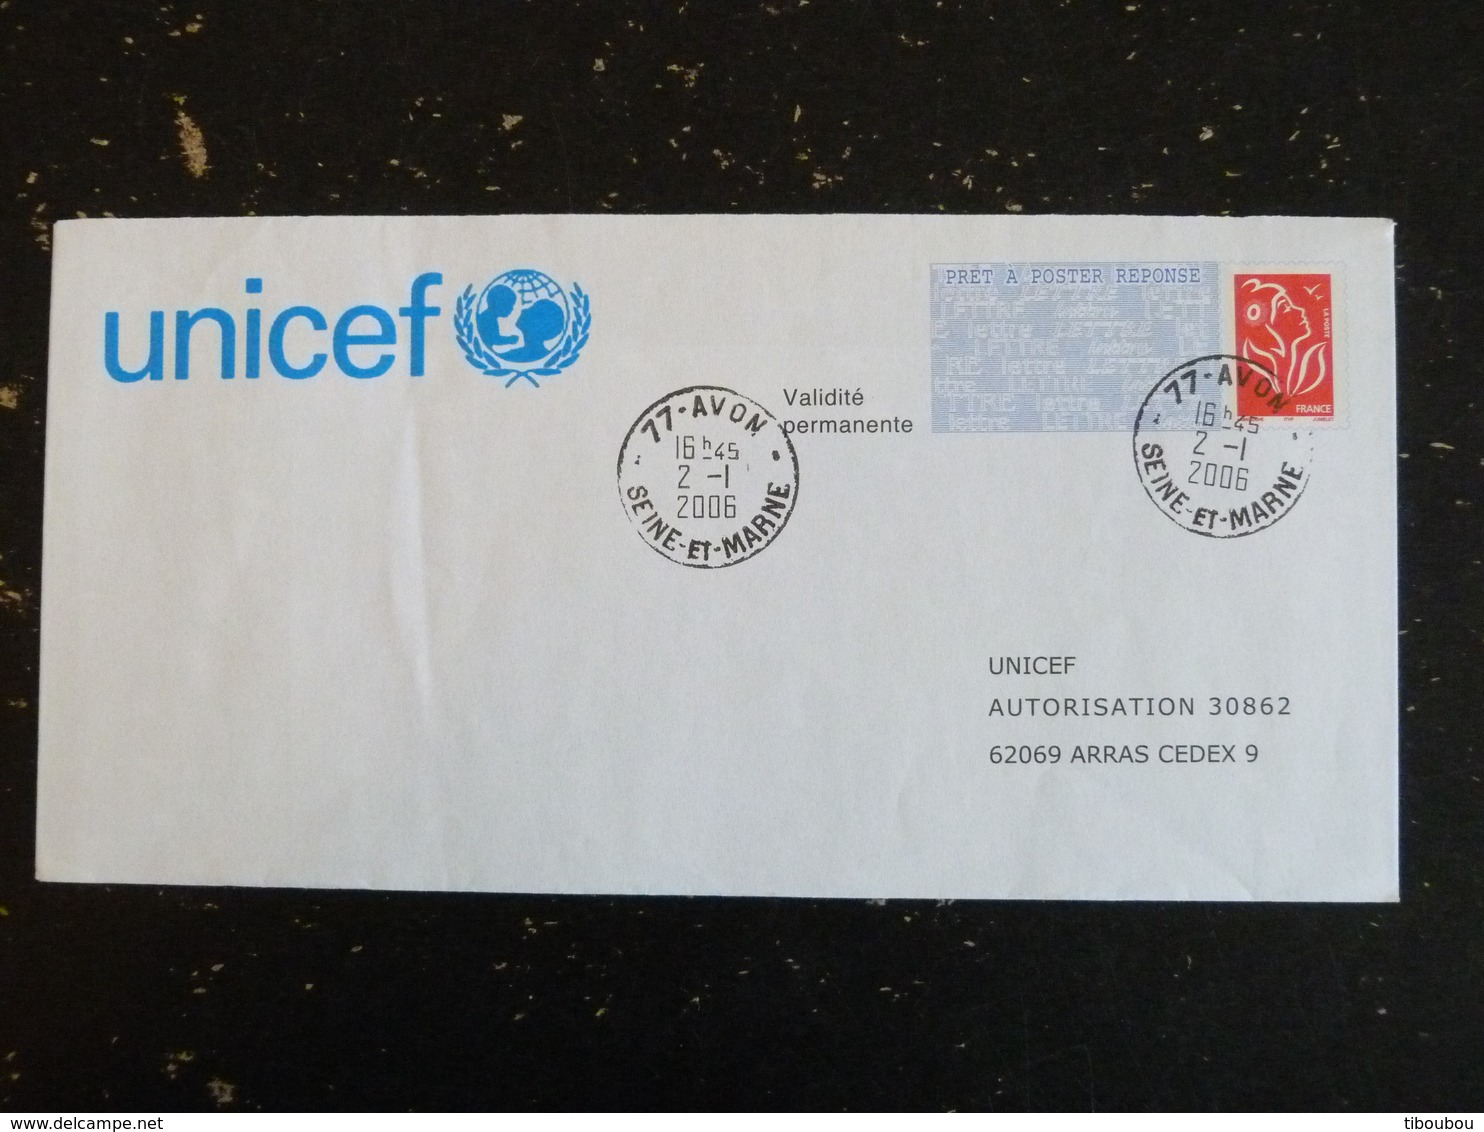 AVON - SEINE ET MARNE - CACHET ROND MANUEL SUR PAP REPONSE LAMOUCHE - UNICEF - Prêts-à-poster:Answer/Lamouche